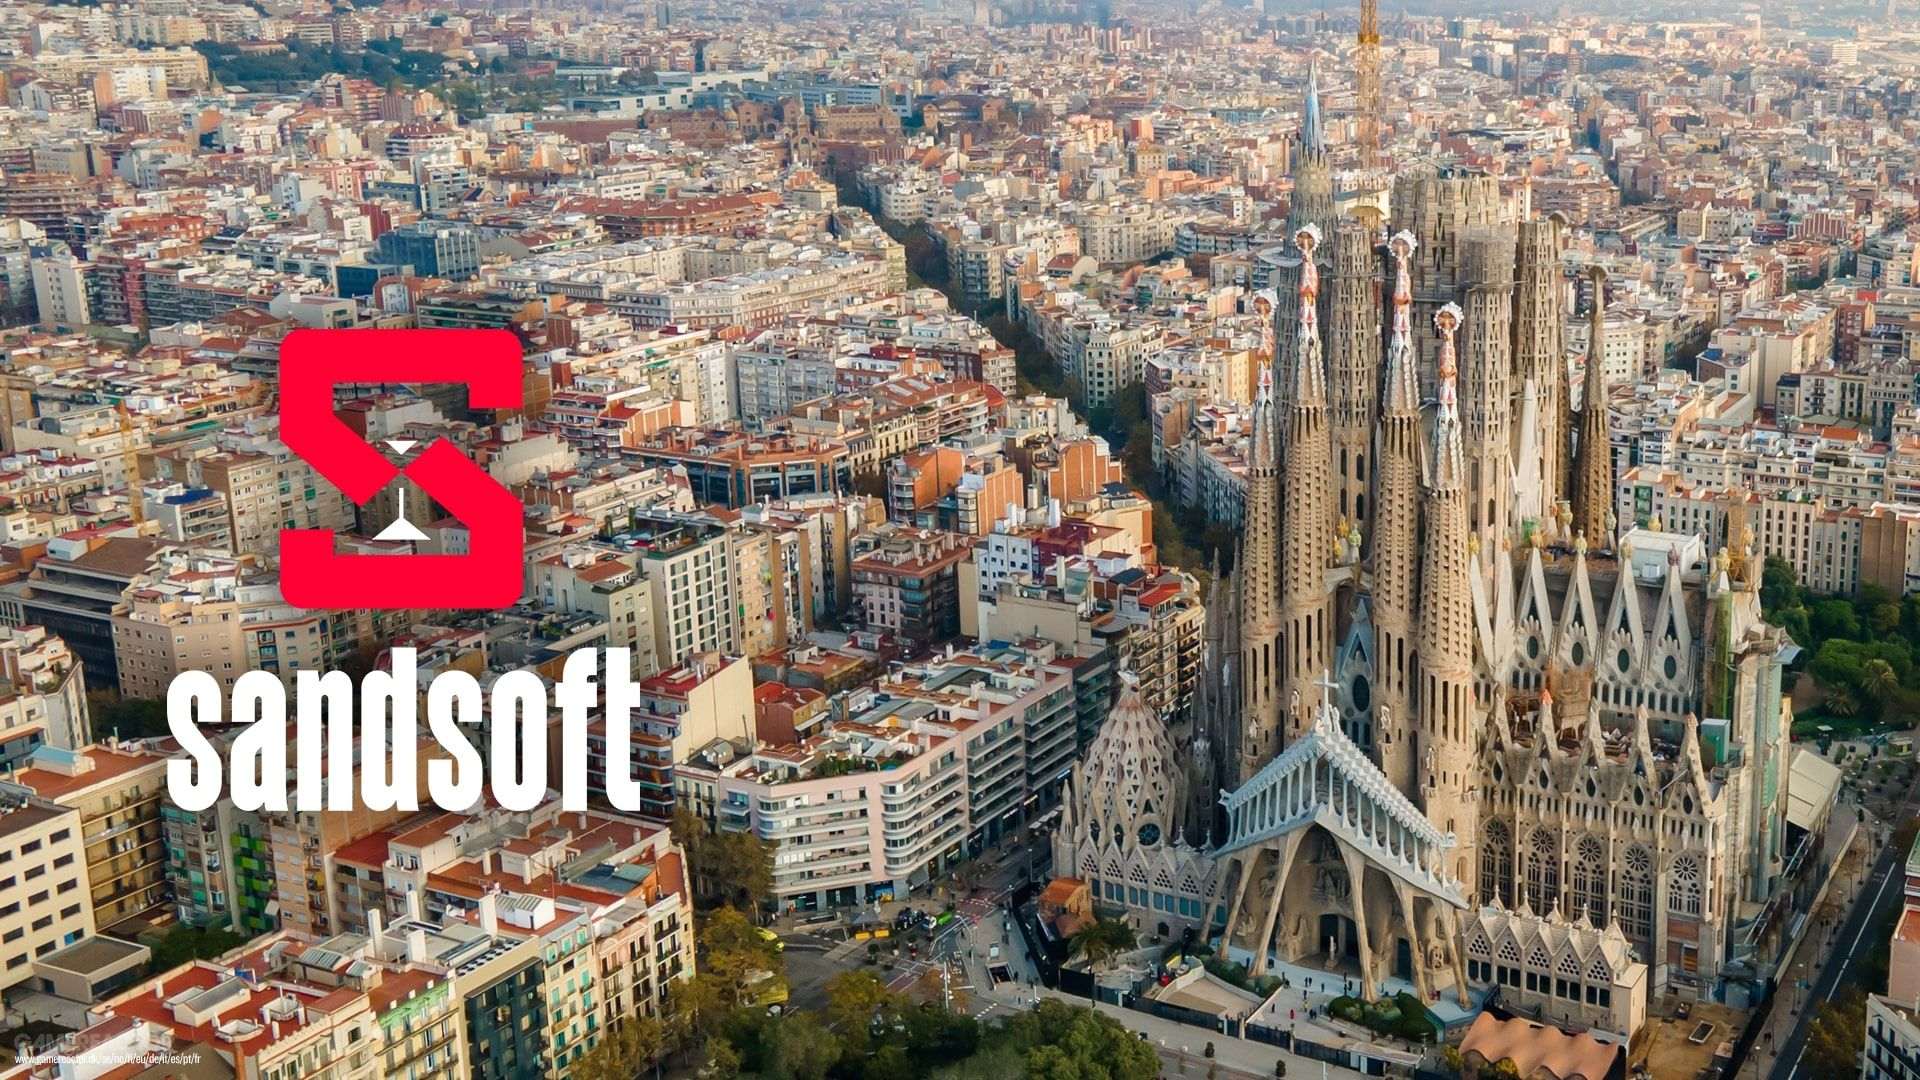 Sandsoft instalará su cuartel general europeo en Barcelona